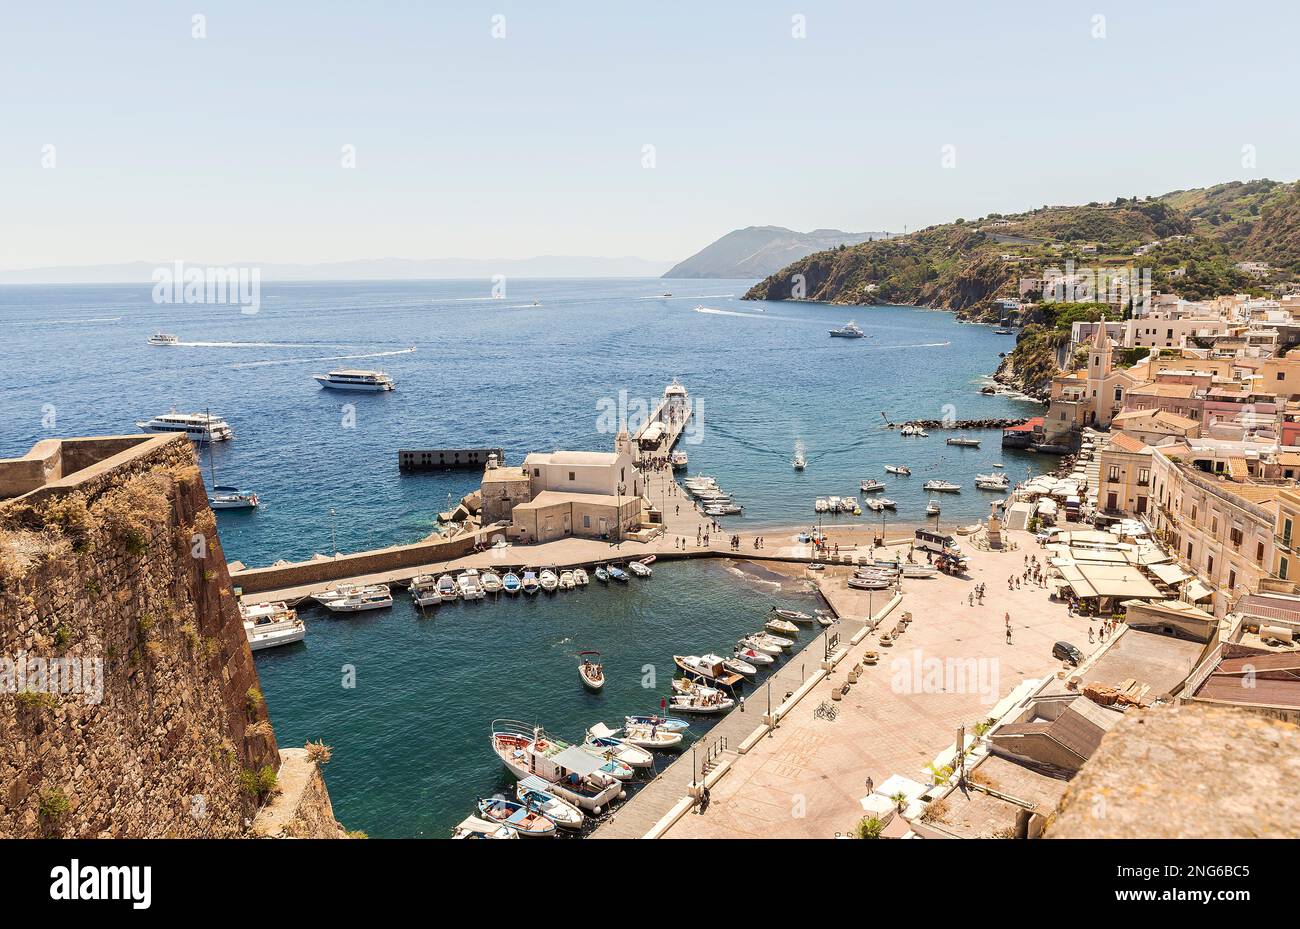 Atemberaubende Meereslandschaften der Äolischen Inseln (Isole Eolie) in Lipari, Provinz Messina, Sizilien, Italien. Stockfoto